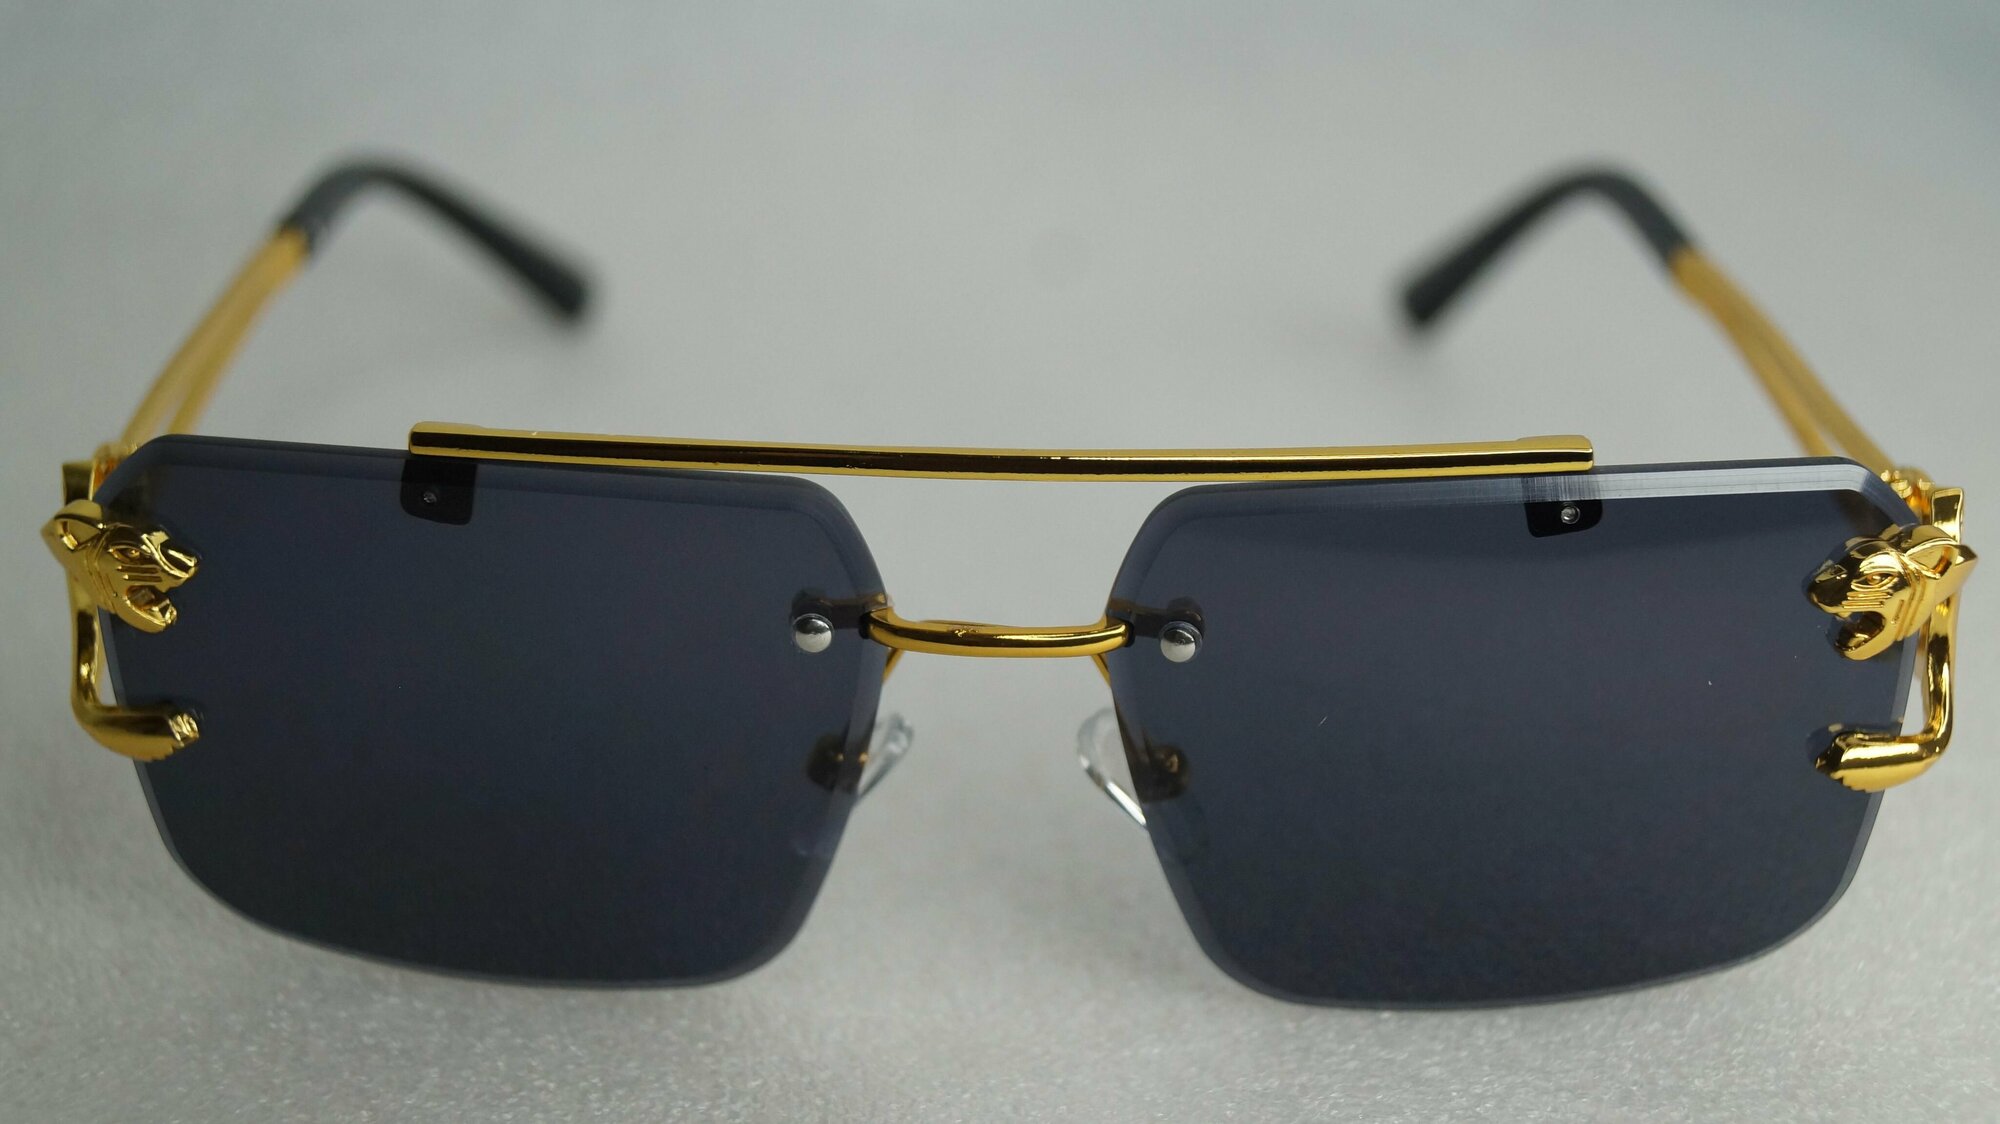 Солнцезащитные очки Jaguar